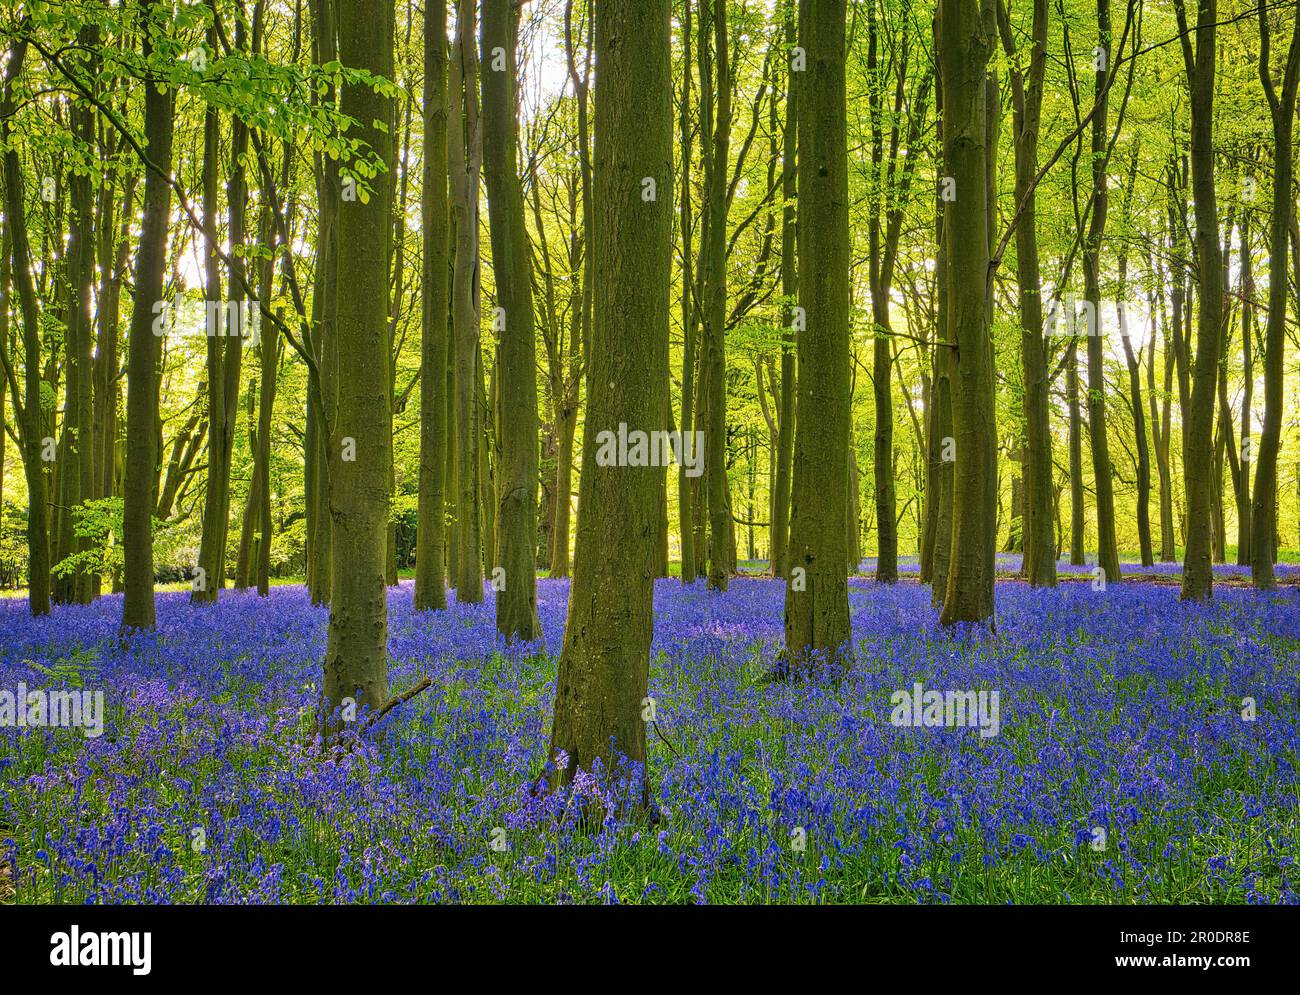 Der wunderschöne Teppich der Blauen Glocke verkörpert Frühling und neues Leben. Aufgenommen in Badbury Clump, Oxfordshire, einem der ältesten Buchenwälder. Stockfoto